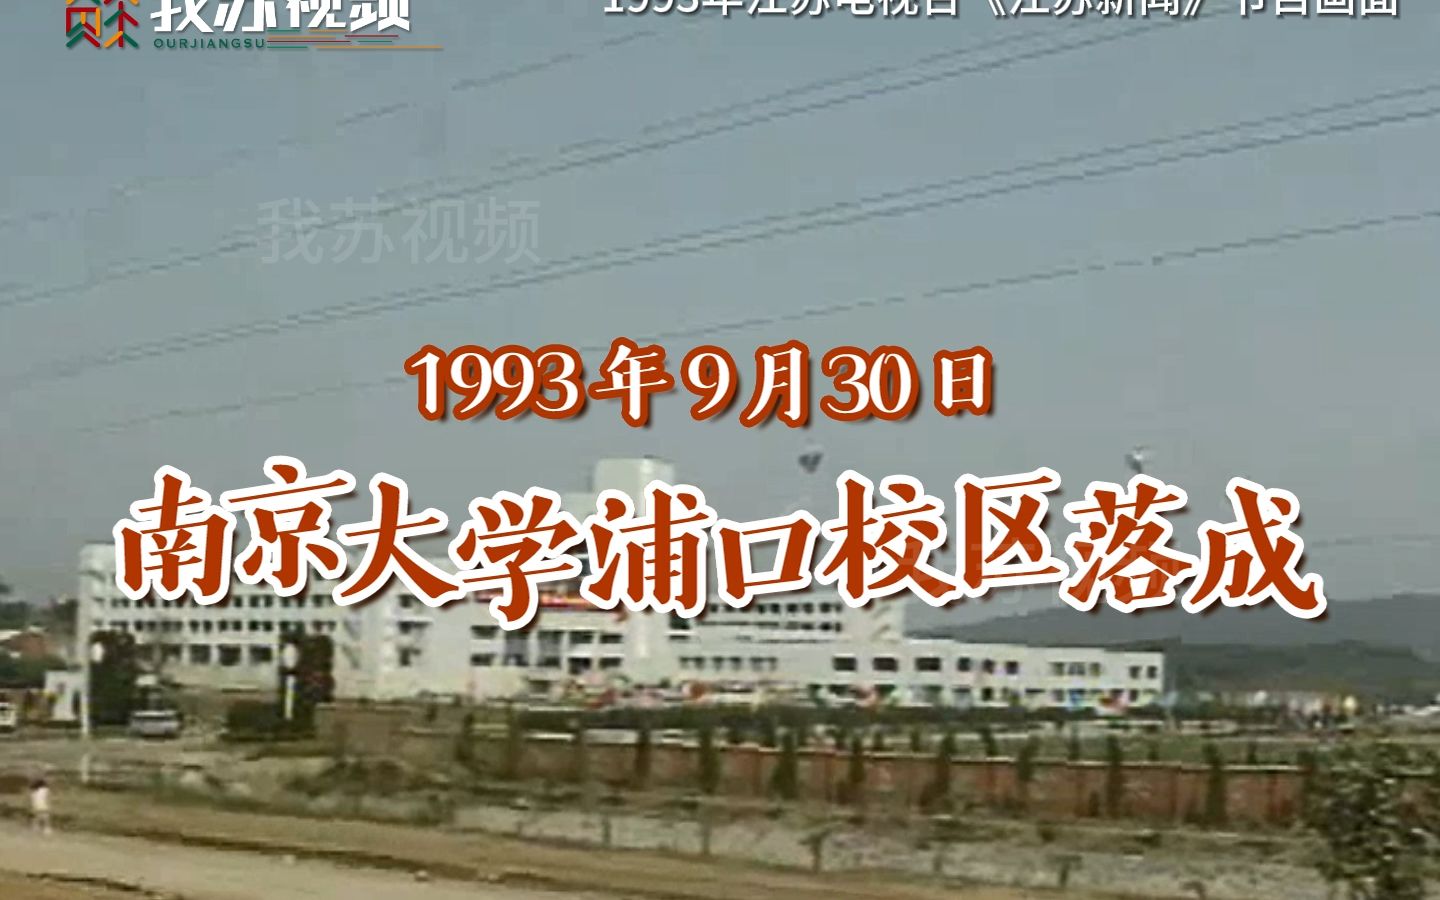 1993年南京大学浦口校区初建成的样子